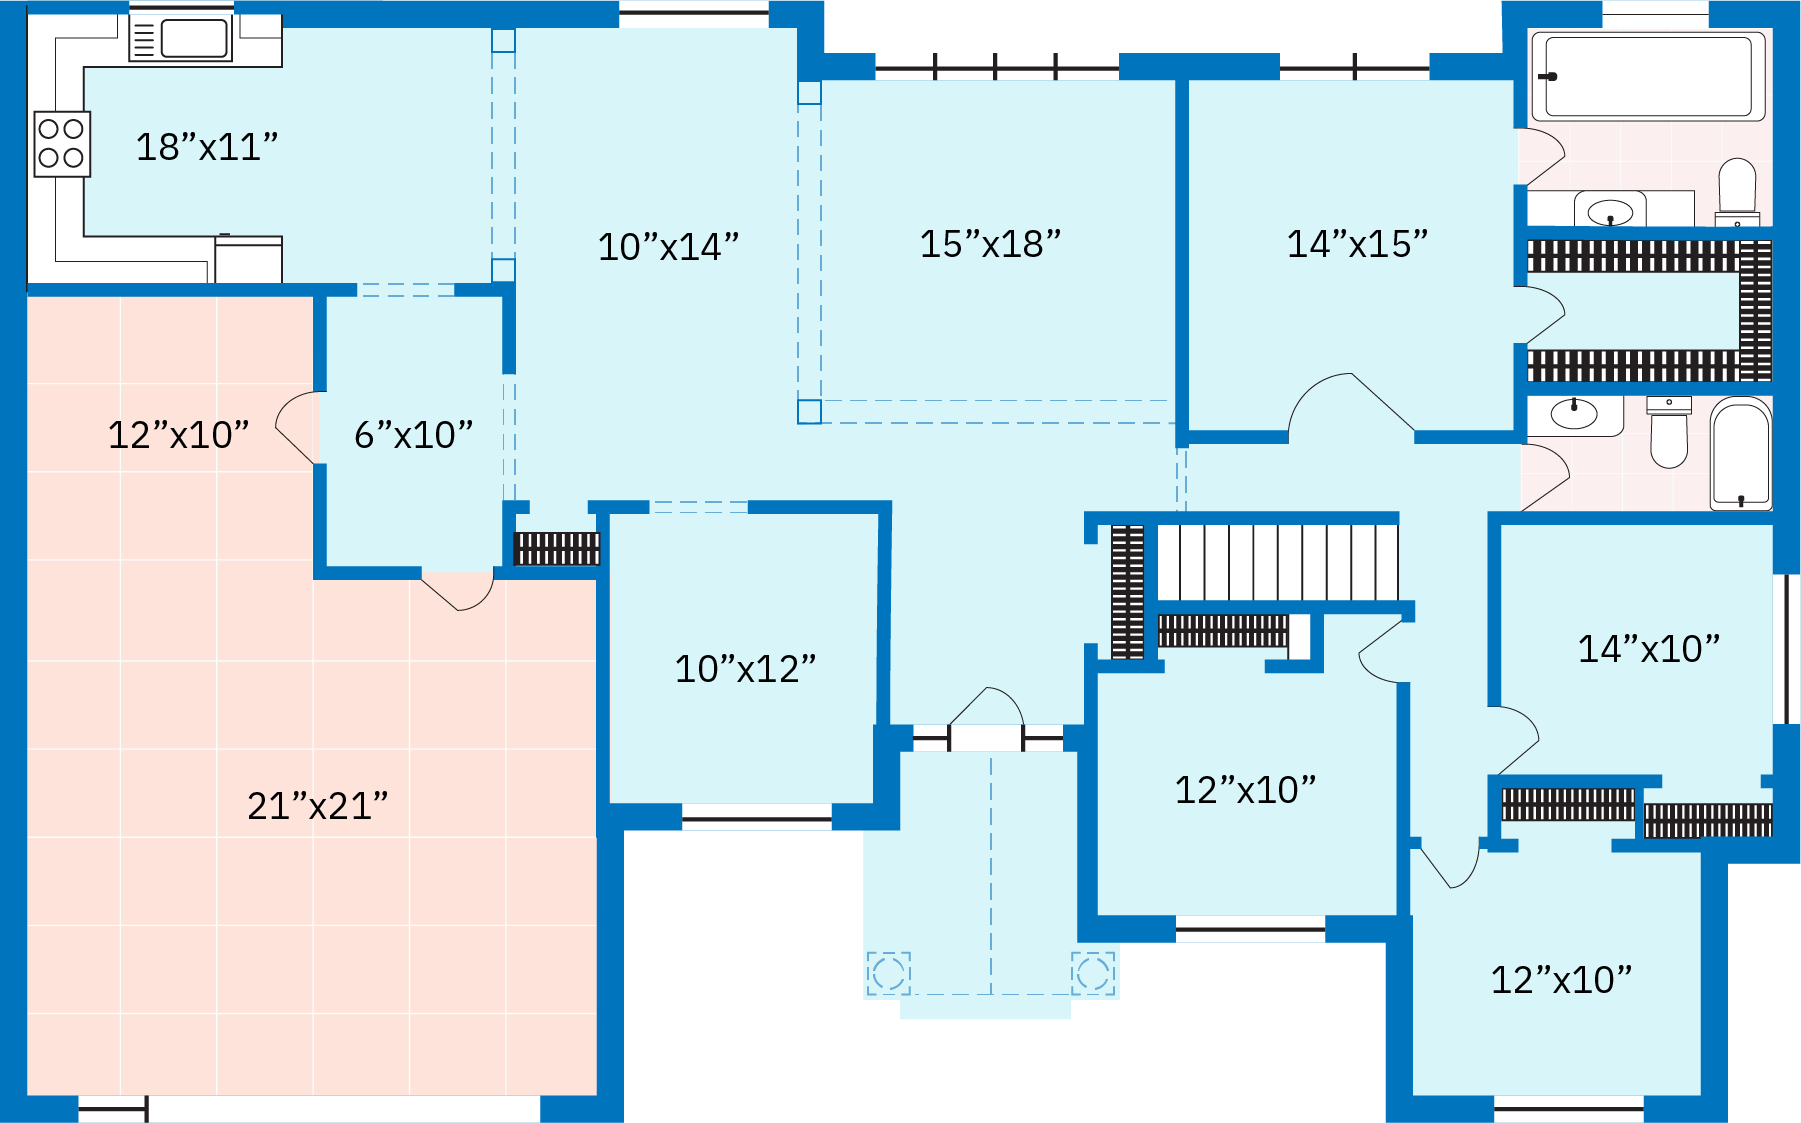 مخطط الطابق لمنزل أمريكي من الطبقة المتوسطة في القرن الحادي والعشرين. يصور مخطط الأرضية منزلًا من طابق واحد مع مطبخ، وأربع غرف نوم، وحمامين، وغرفة عائلية، وعرين، وخطوات نزولًا إلى الطابق السفلي، ومرآب ملحق لسيارتين.